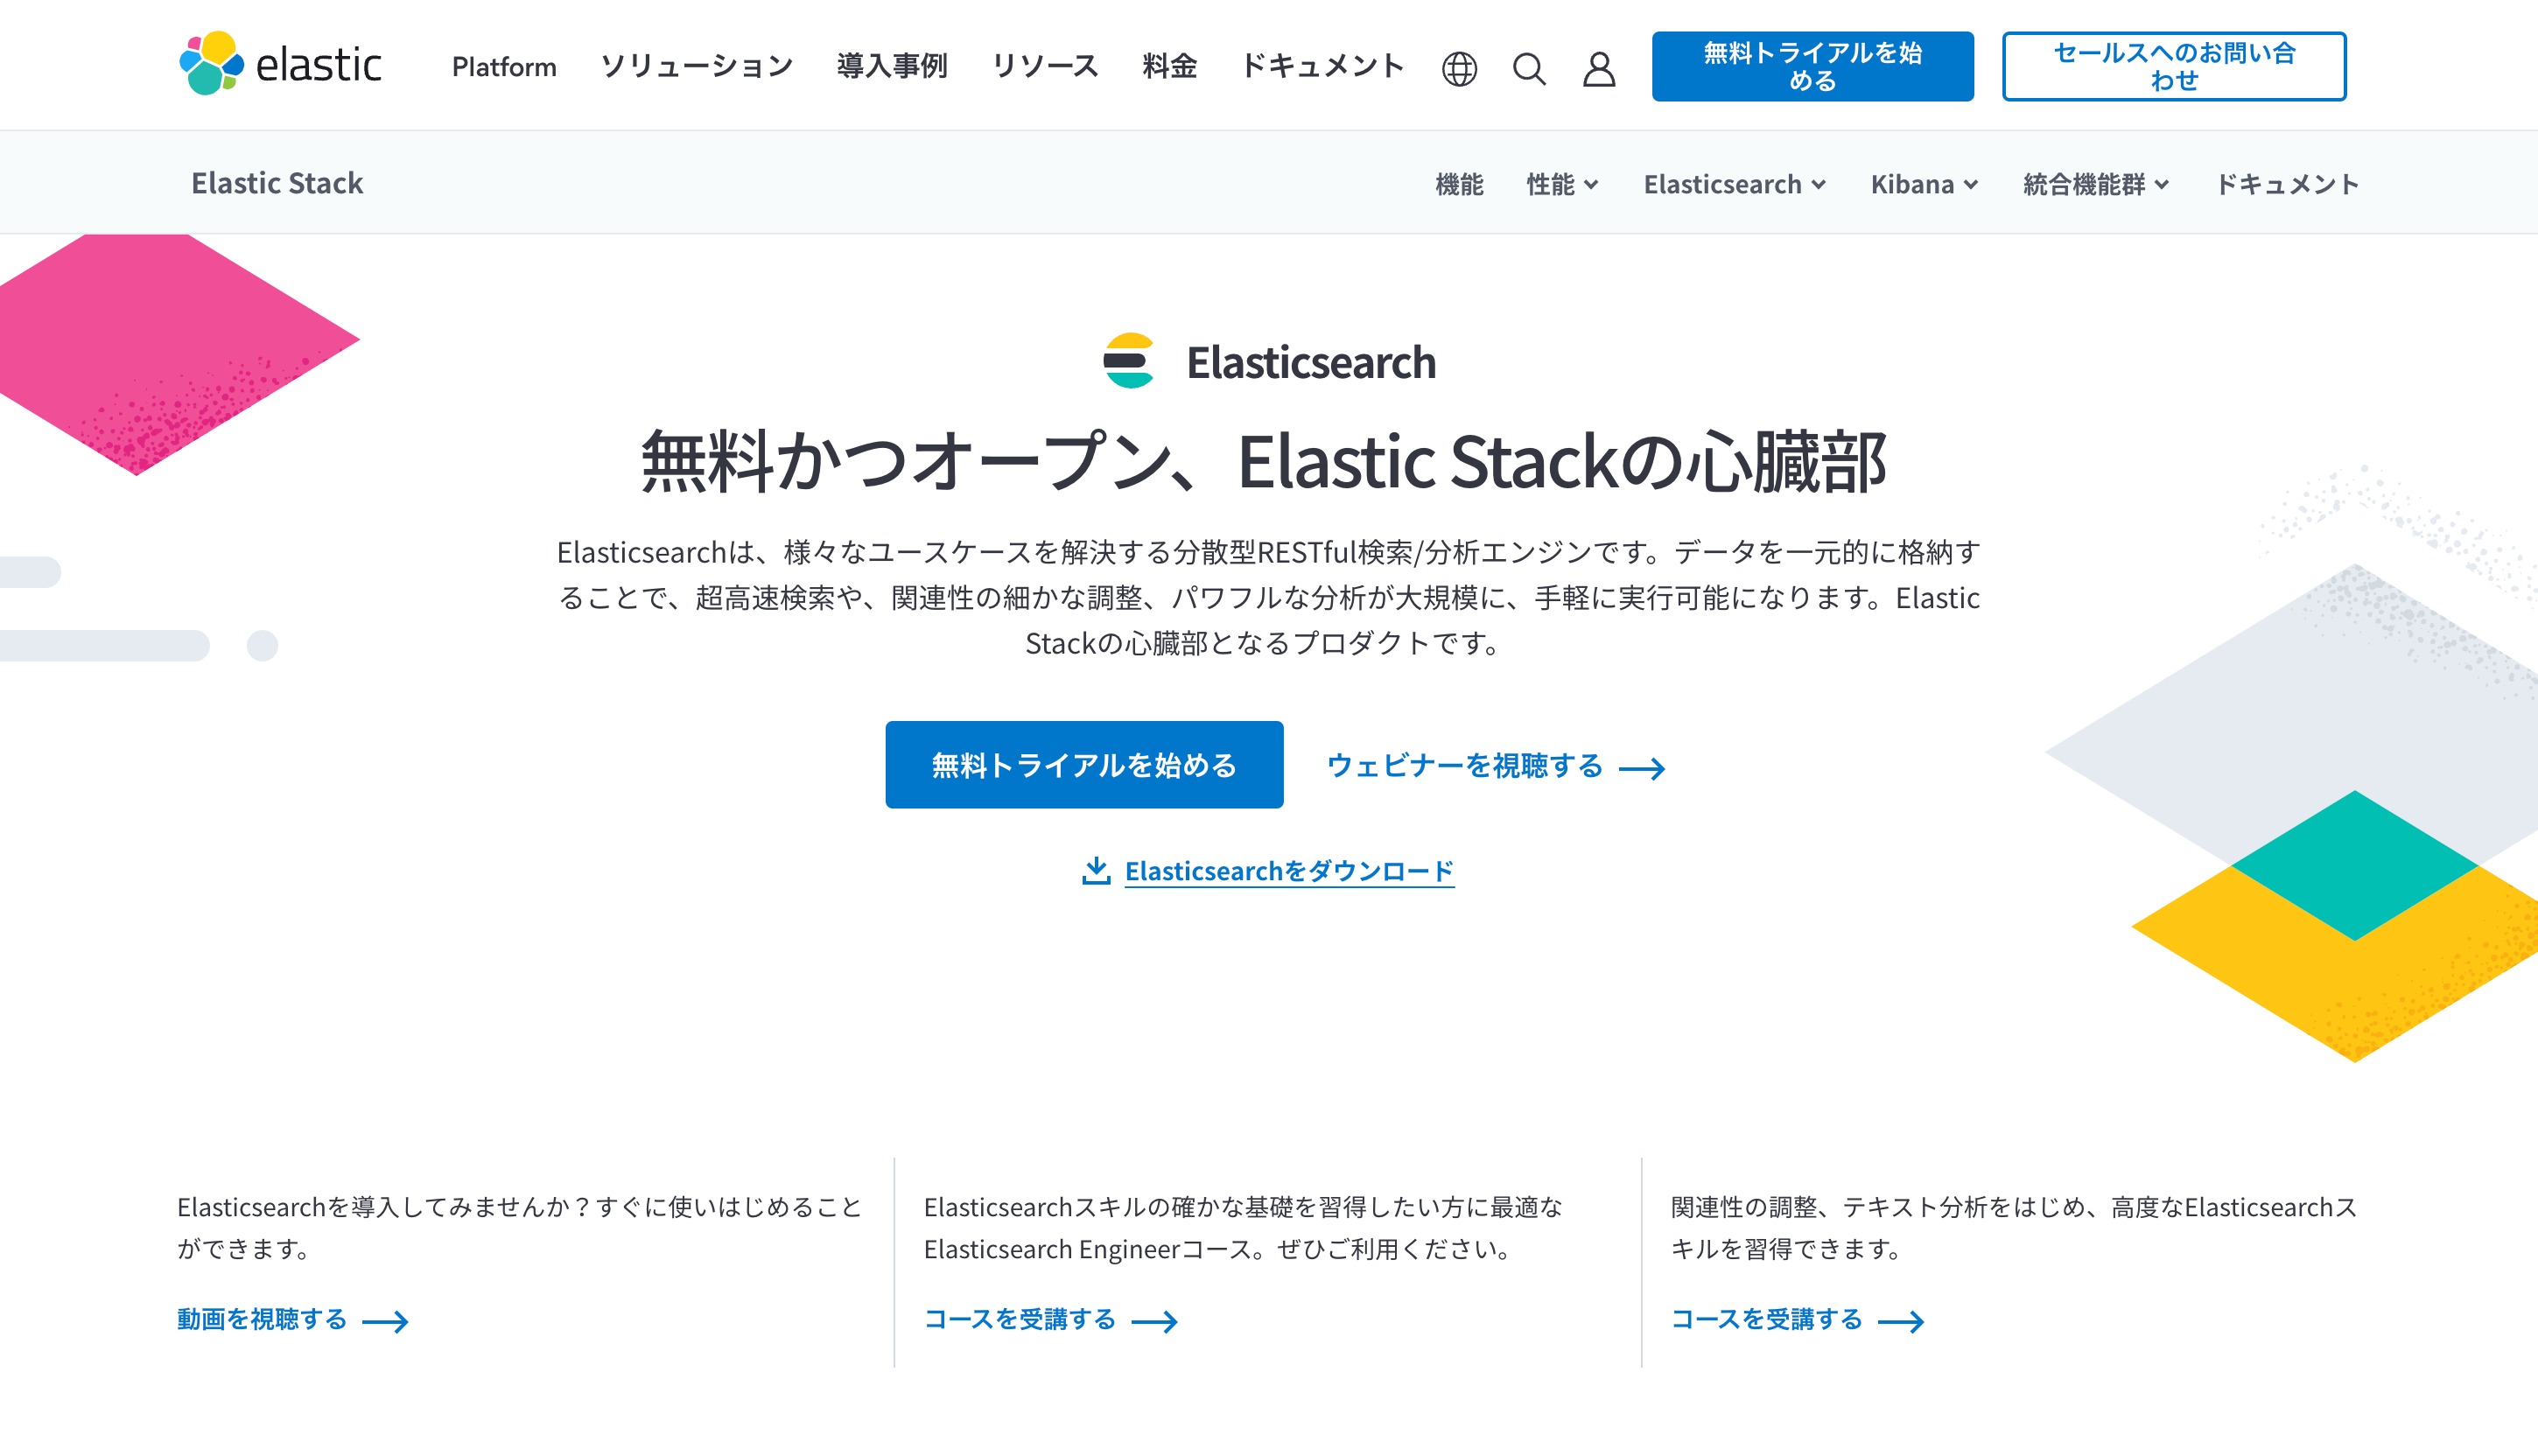 ElasticsearchのWebサイト